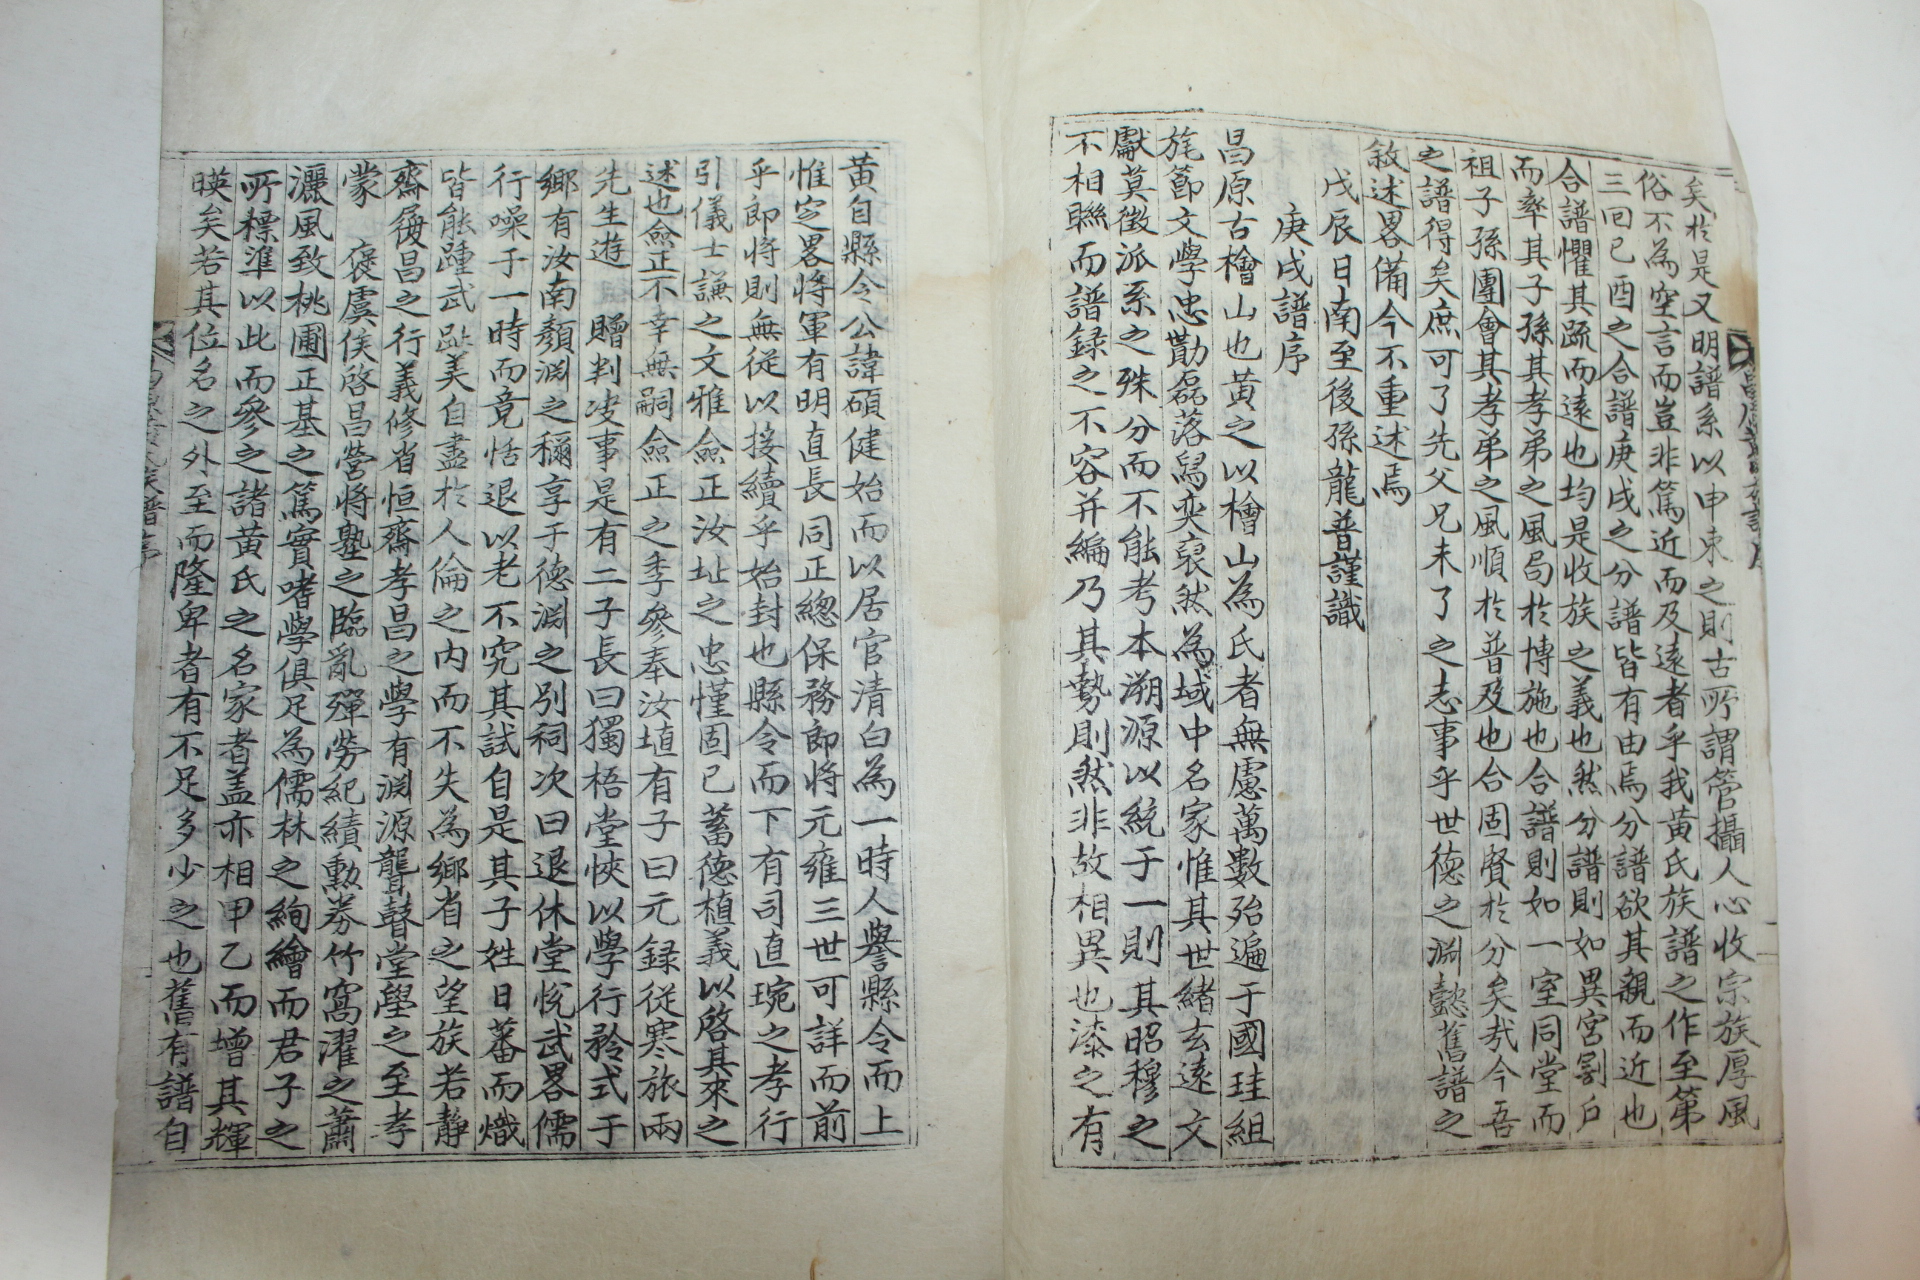 1957년 창원황씨족보(昌原黃氏族譜) 4책완질